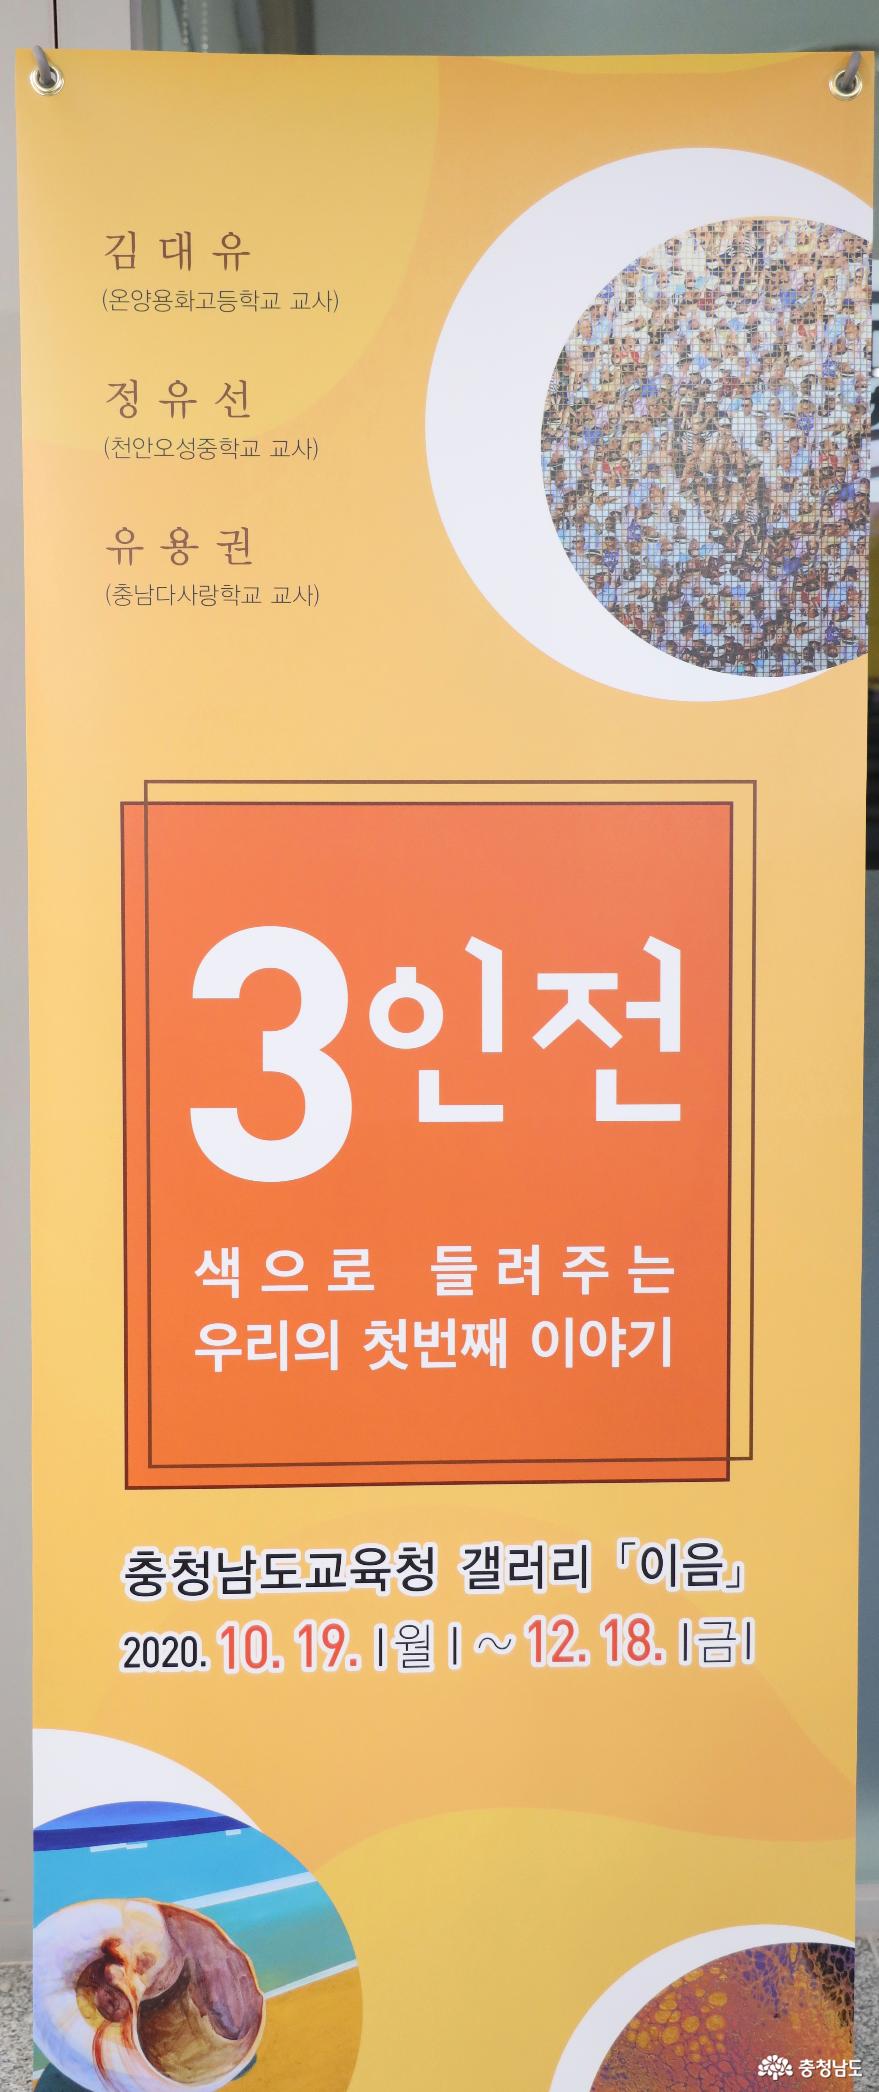 충남교육청 갤러리 이음 다섯 번째 전시 ‘3인전’ 개최